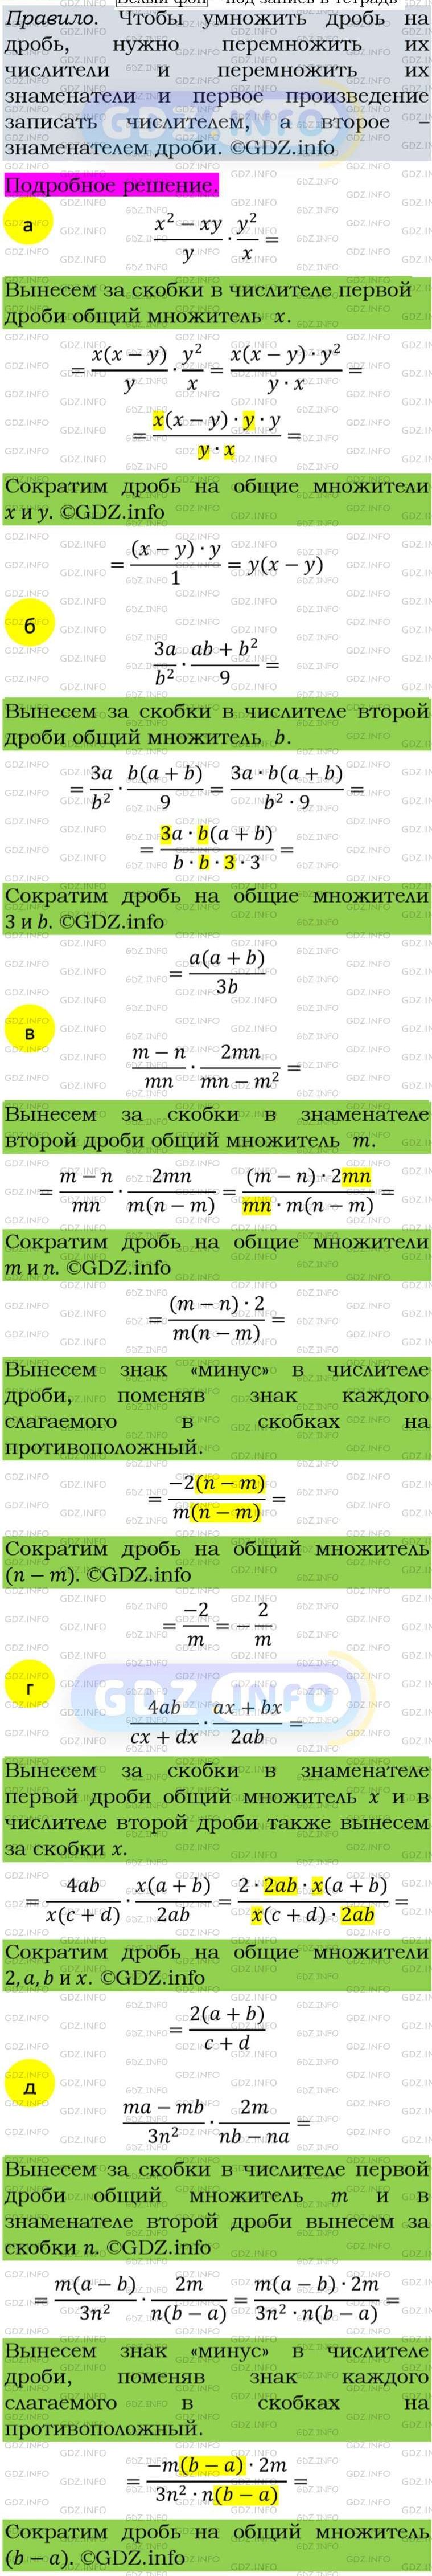 Фото подробного решения: Номер задания №121 из ГДЗ по Алгебре 8 класс: Макарычев Ю.Н.